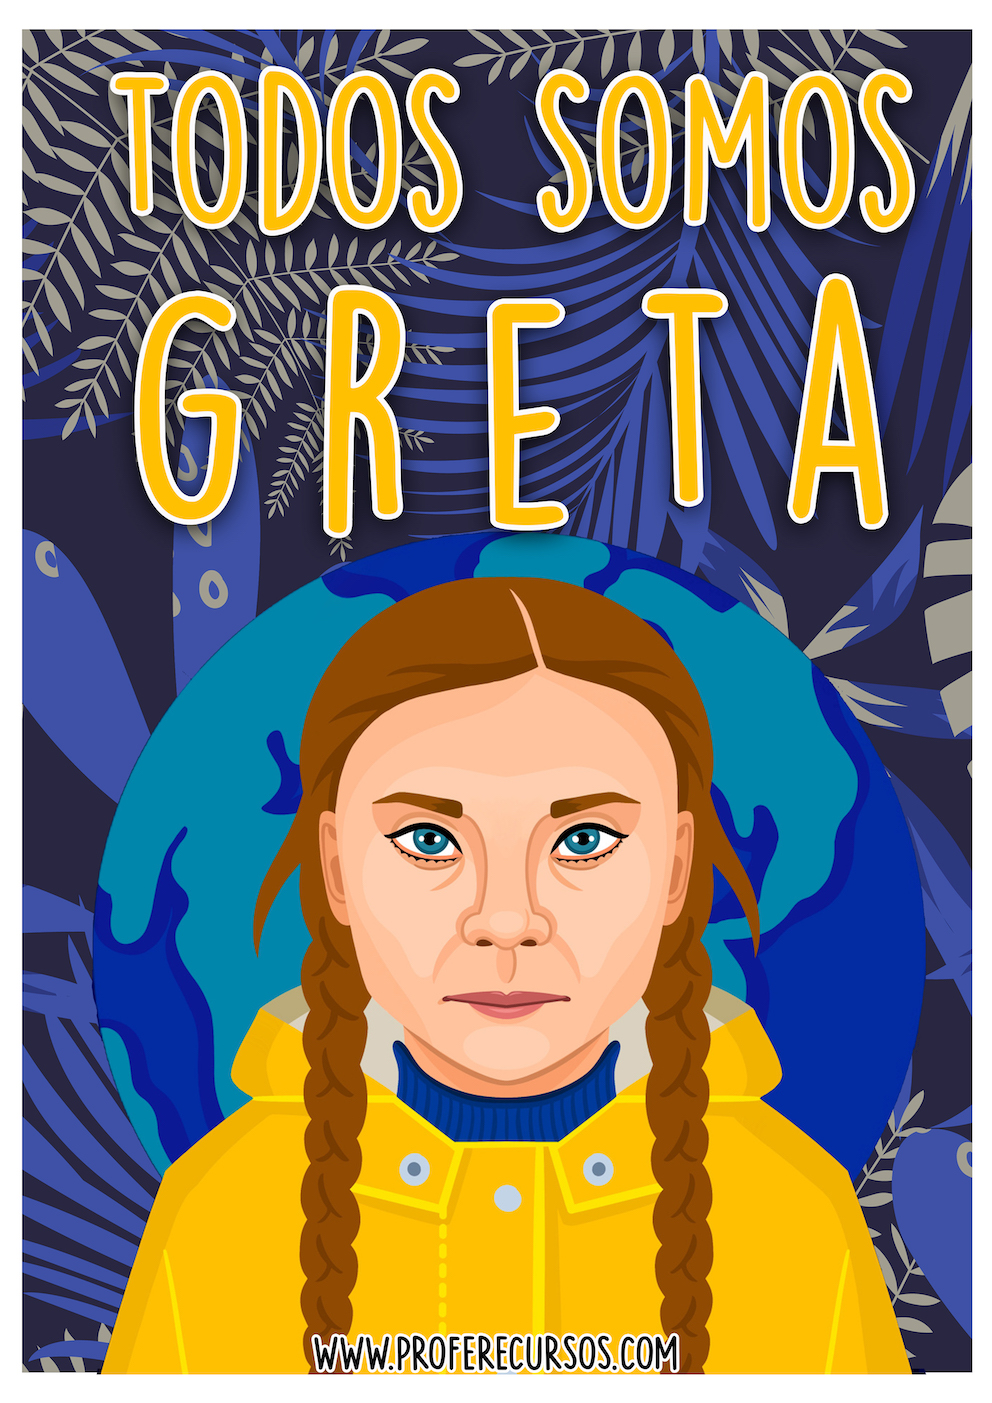 Greta Thunberg poster